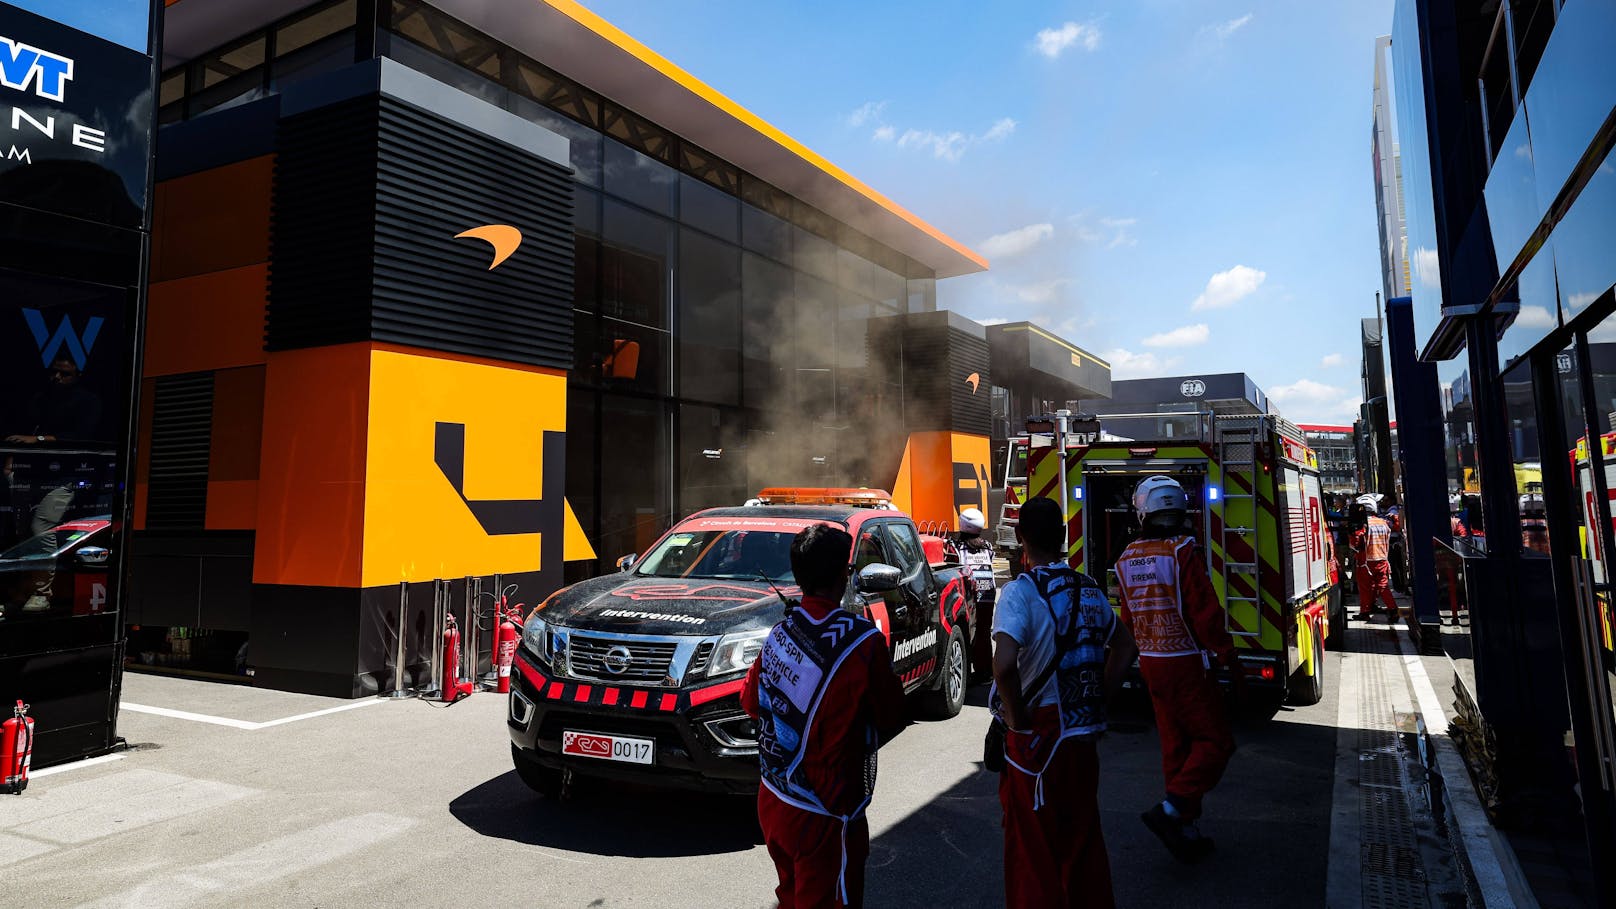 Feuer in Barcelona – Box von McLaren brennt